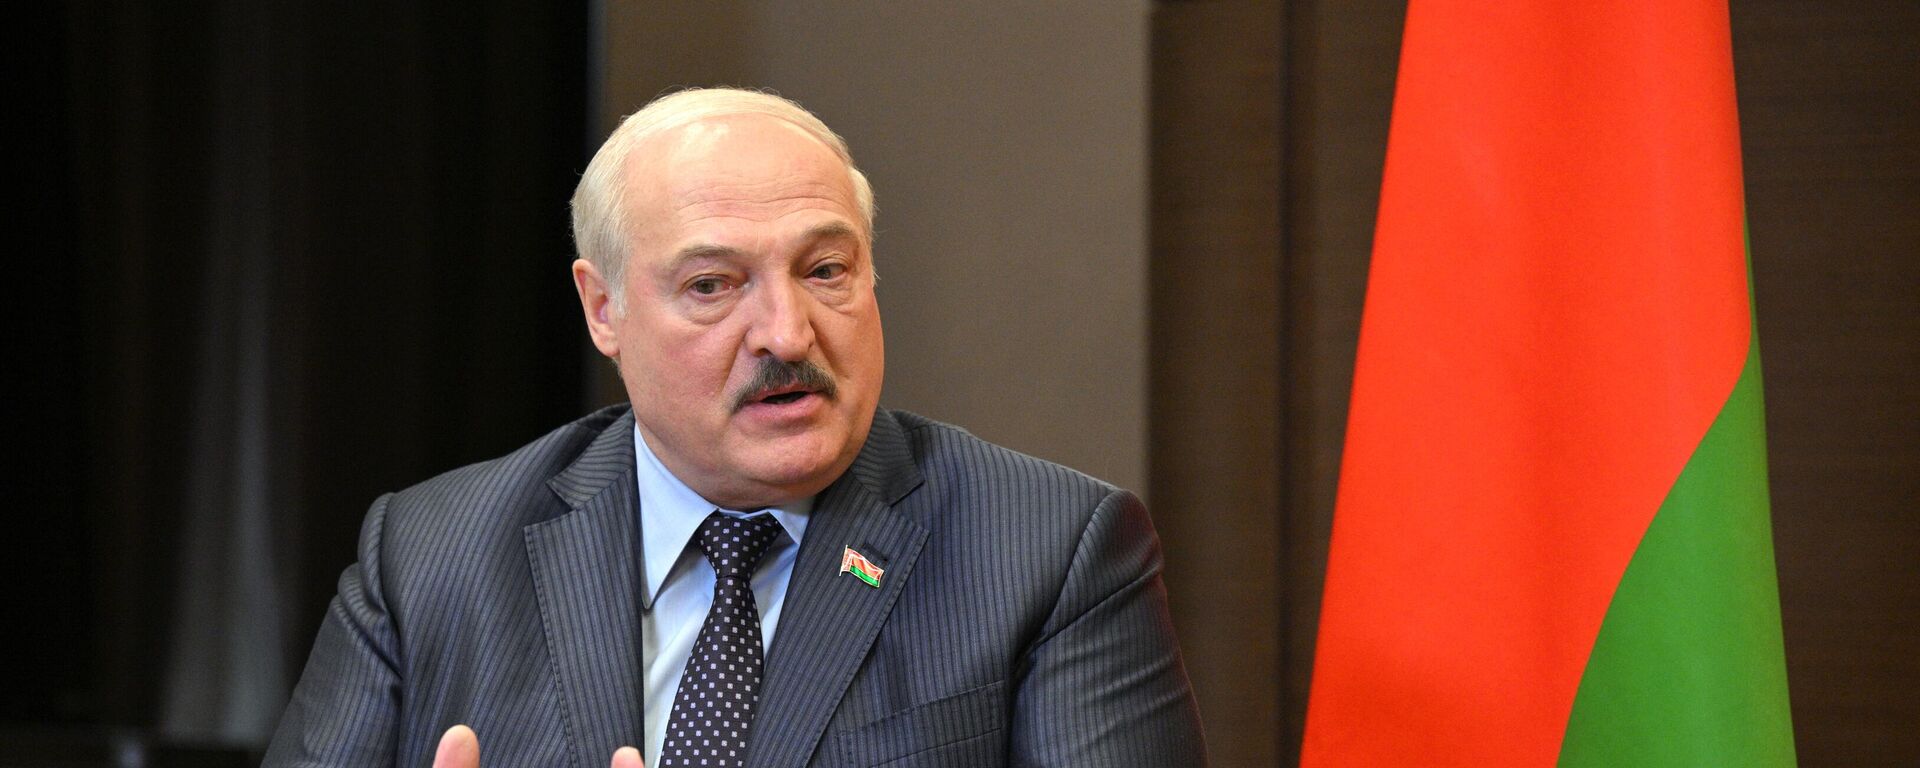  Alexandr Lukashenko, el presidente de Bielorrusia - Sputnik Mundo, 1920, 09.12.2022